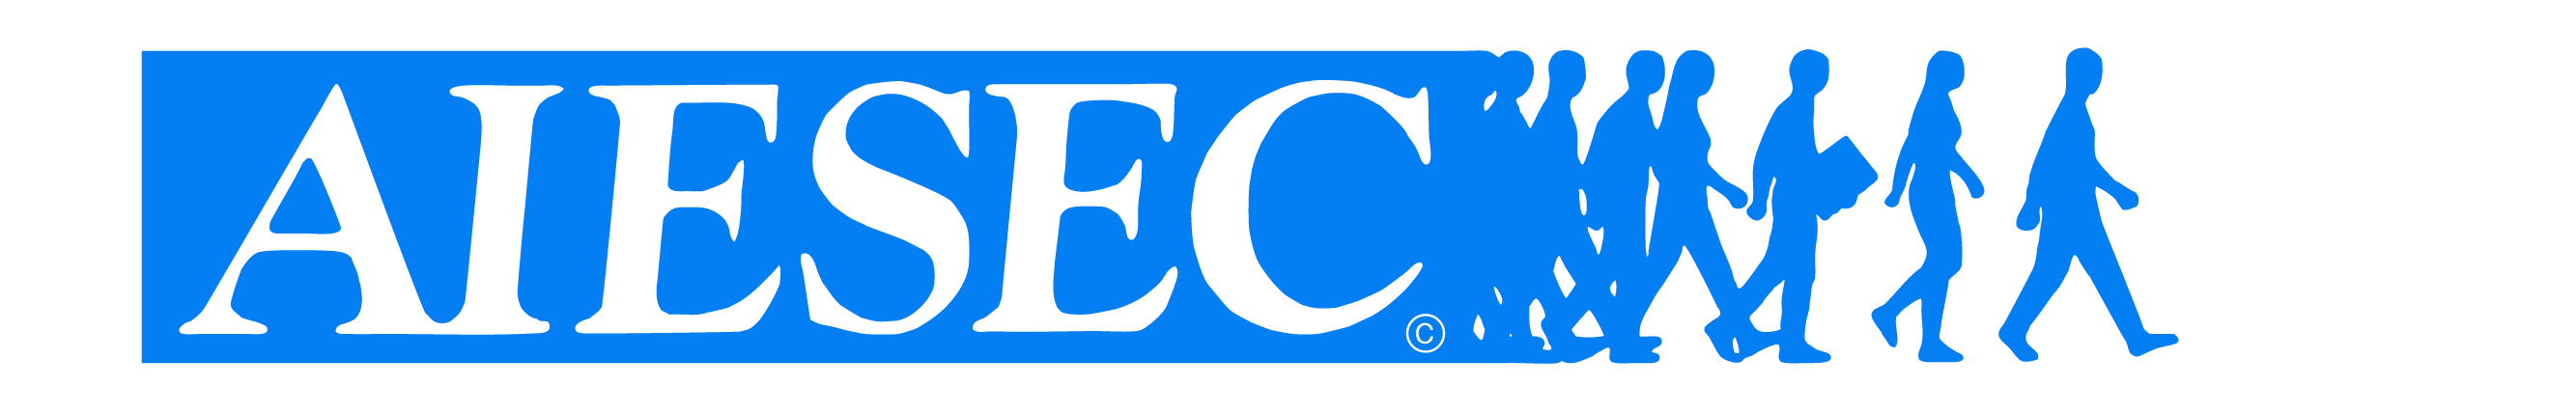 Asociatia AIESEC Oradea logo